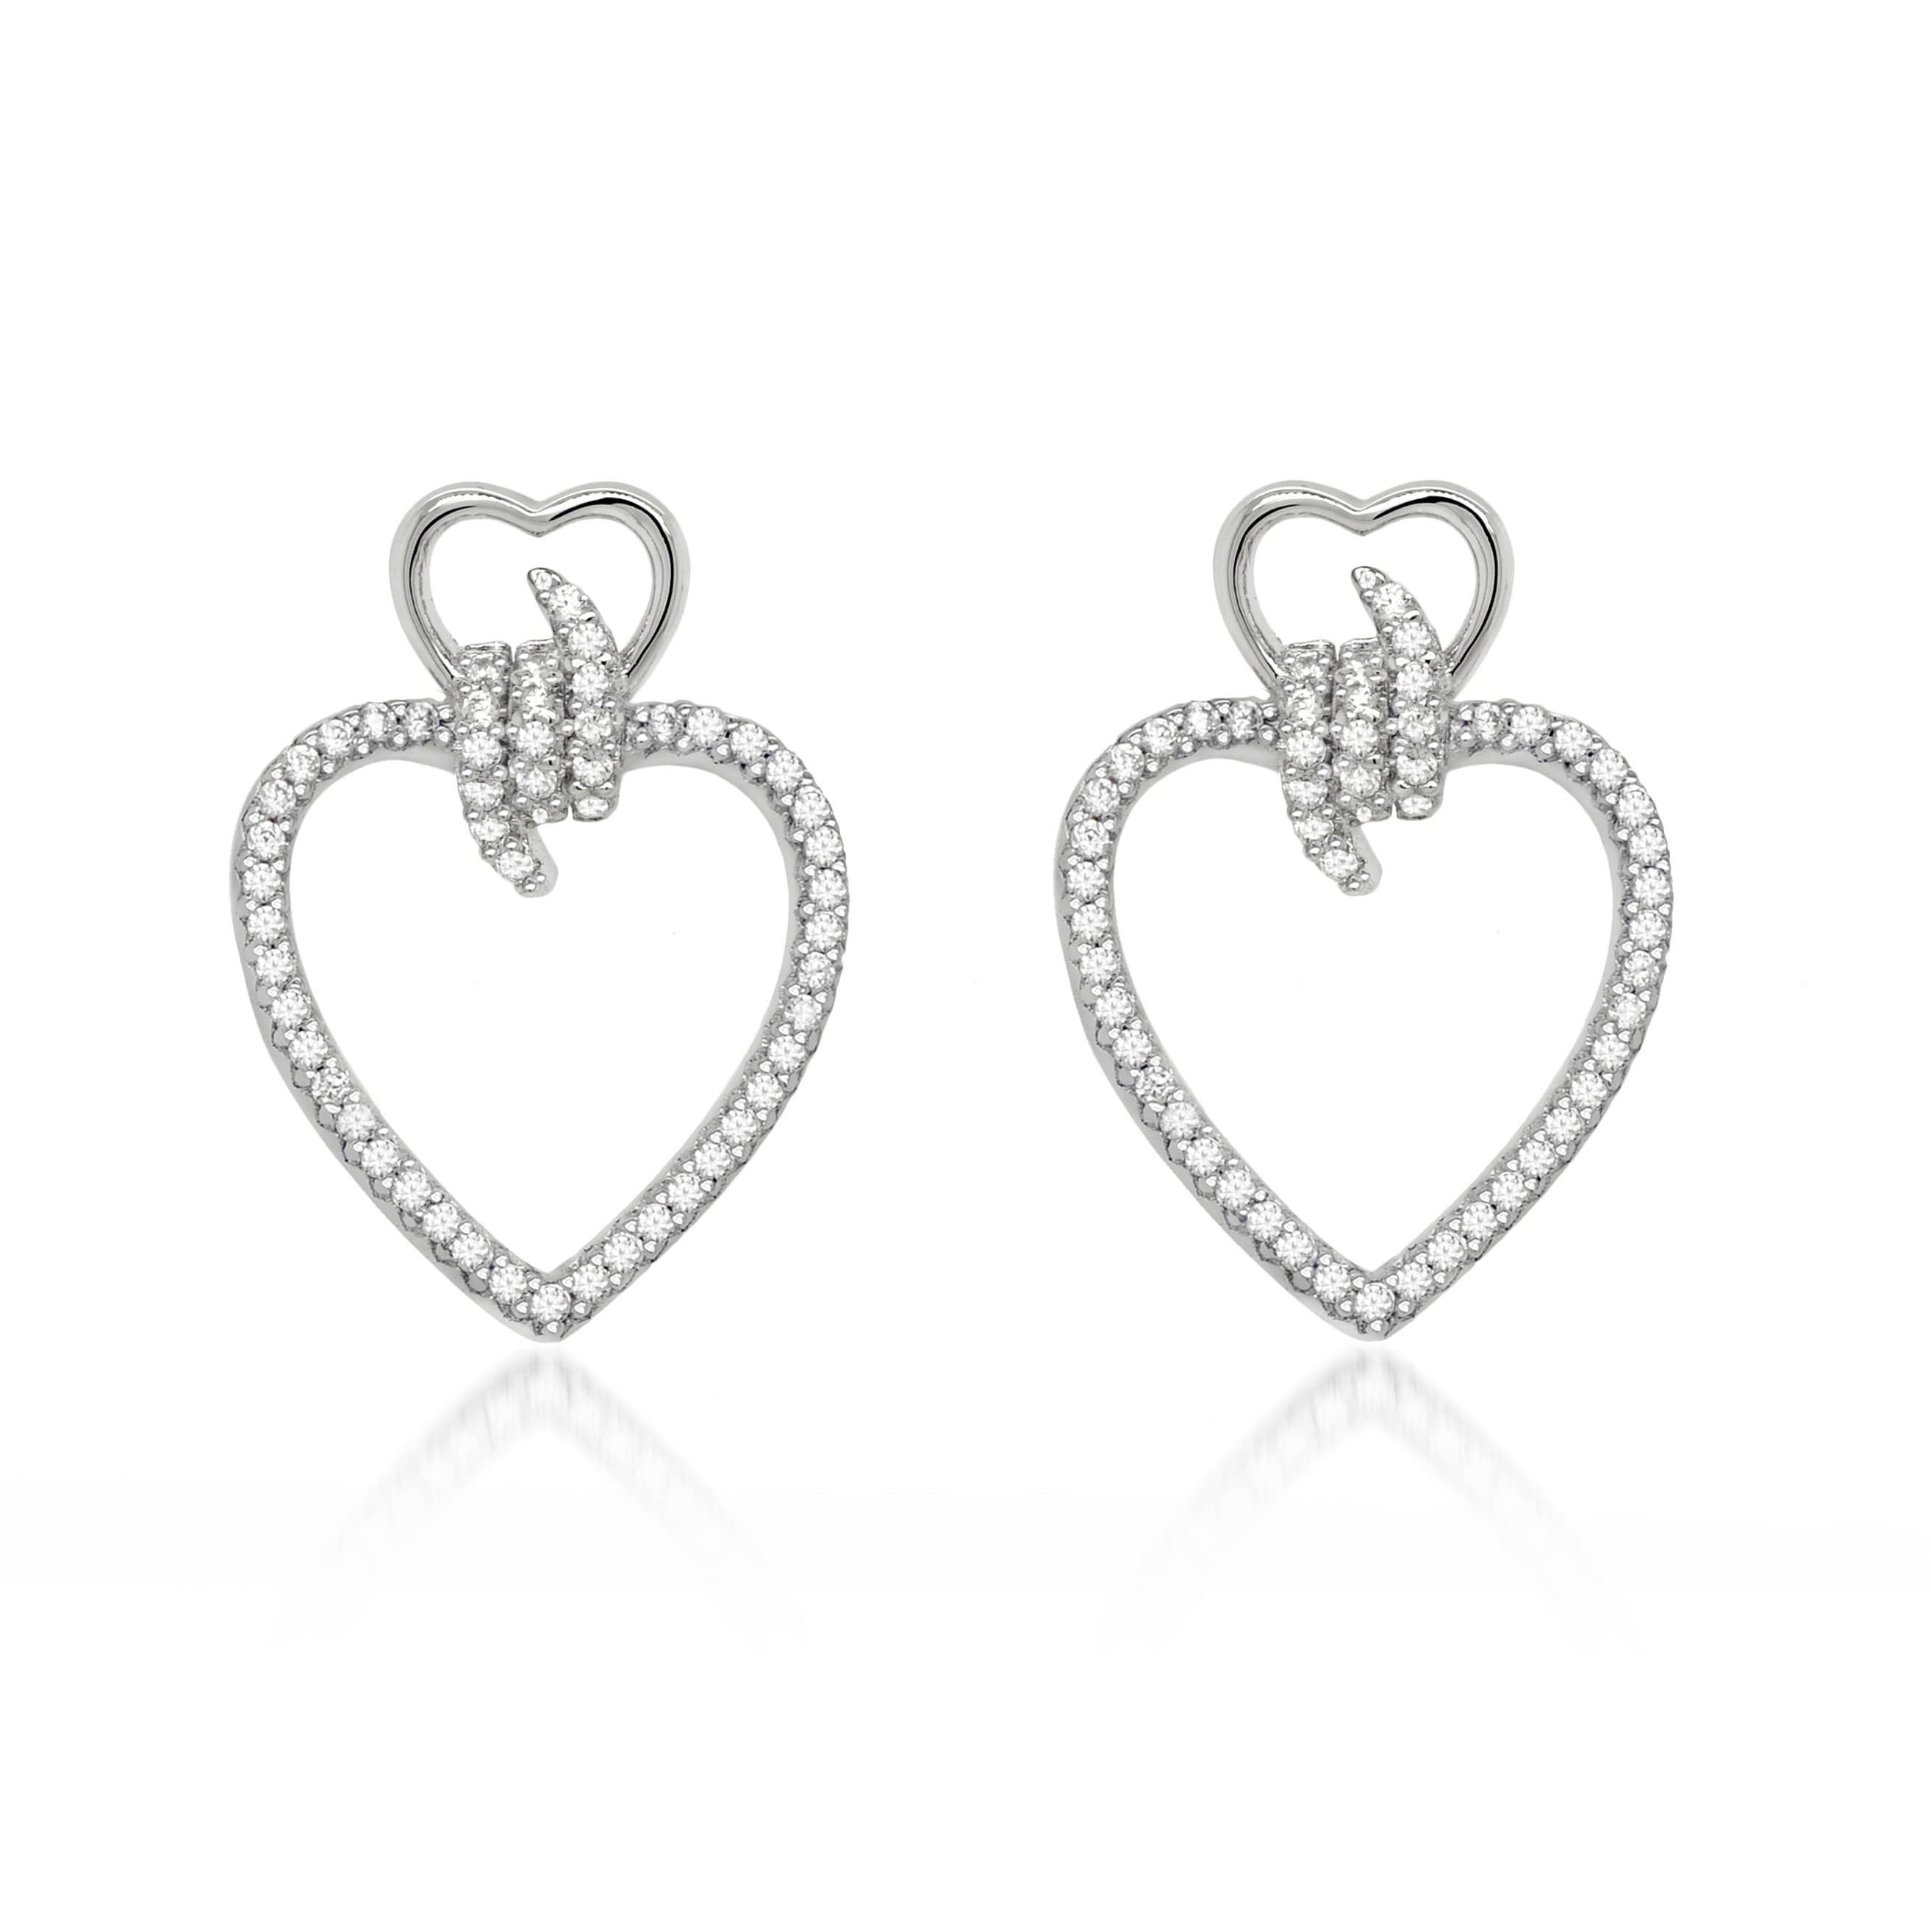 Lynora Jewellery Earring Sterling Silver Knotted Heart Earring Sterling Silver